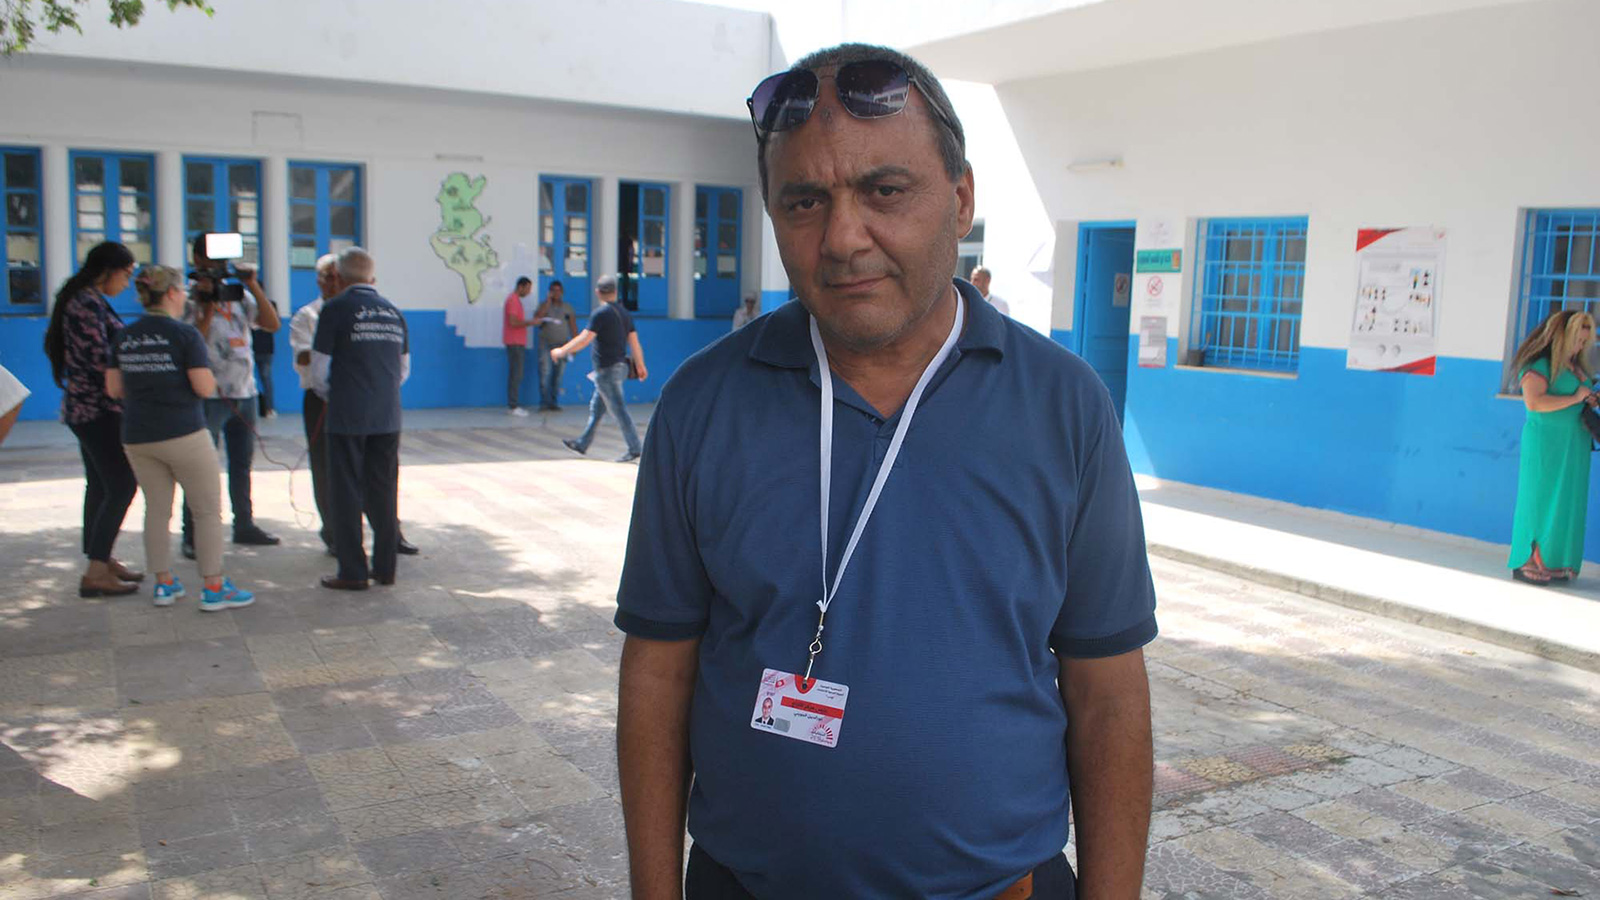 ‪عبد اللطيف الجويني: لا يمكن الحديث اليوم في تونس عن تزوير للانتخابات‬ (الجزيرة)